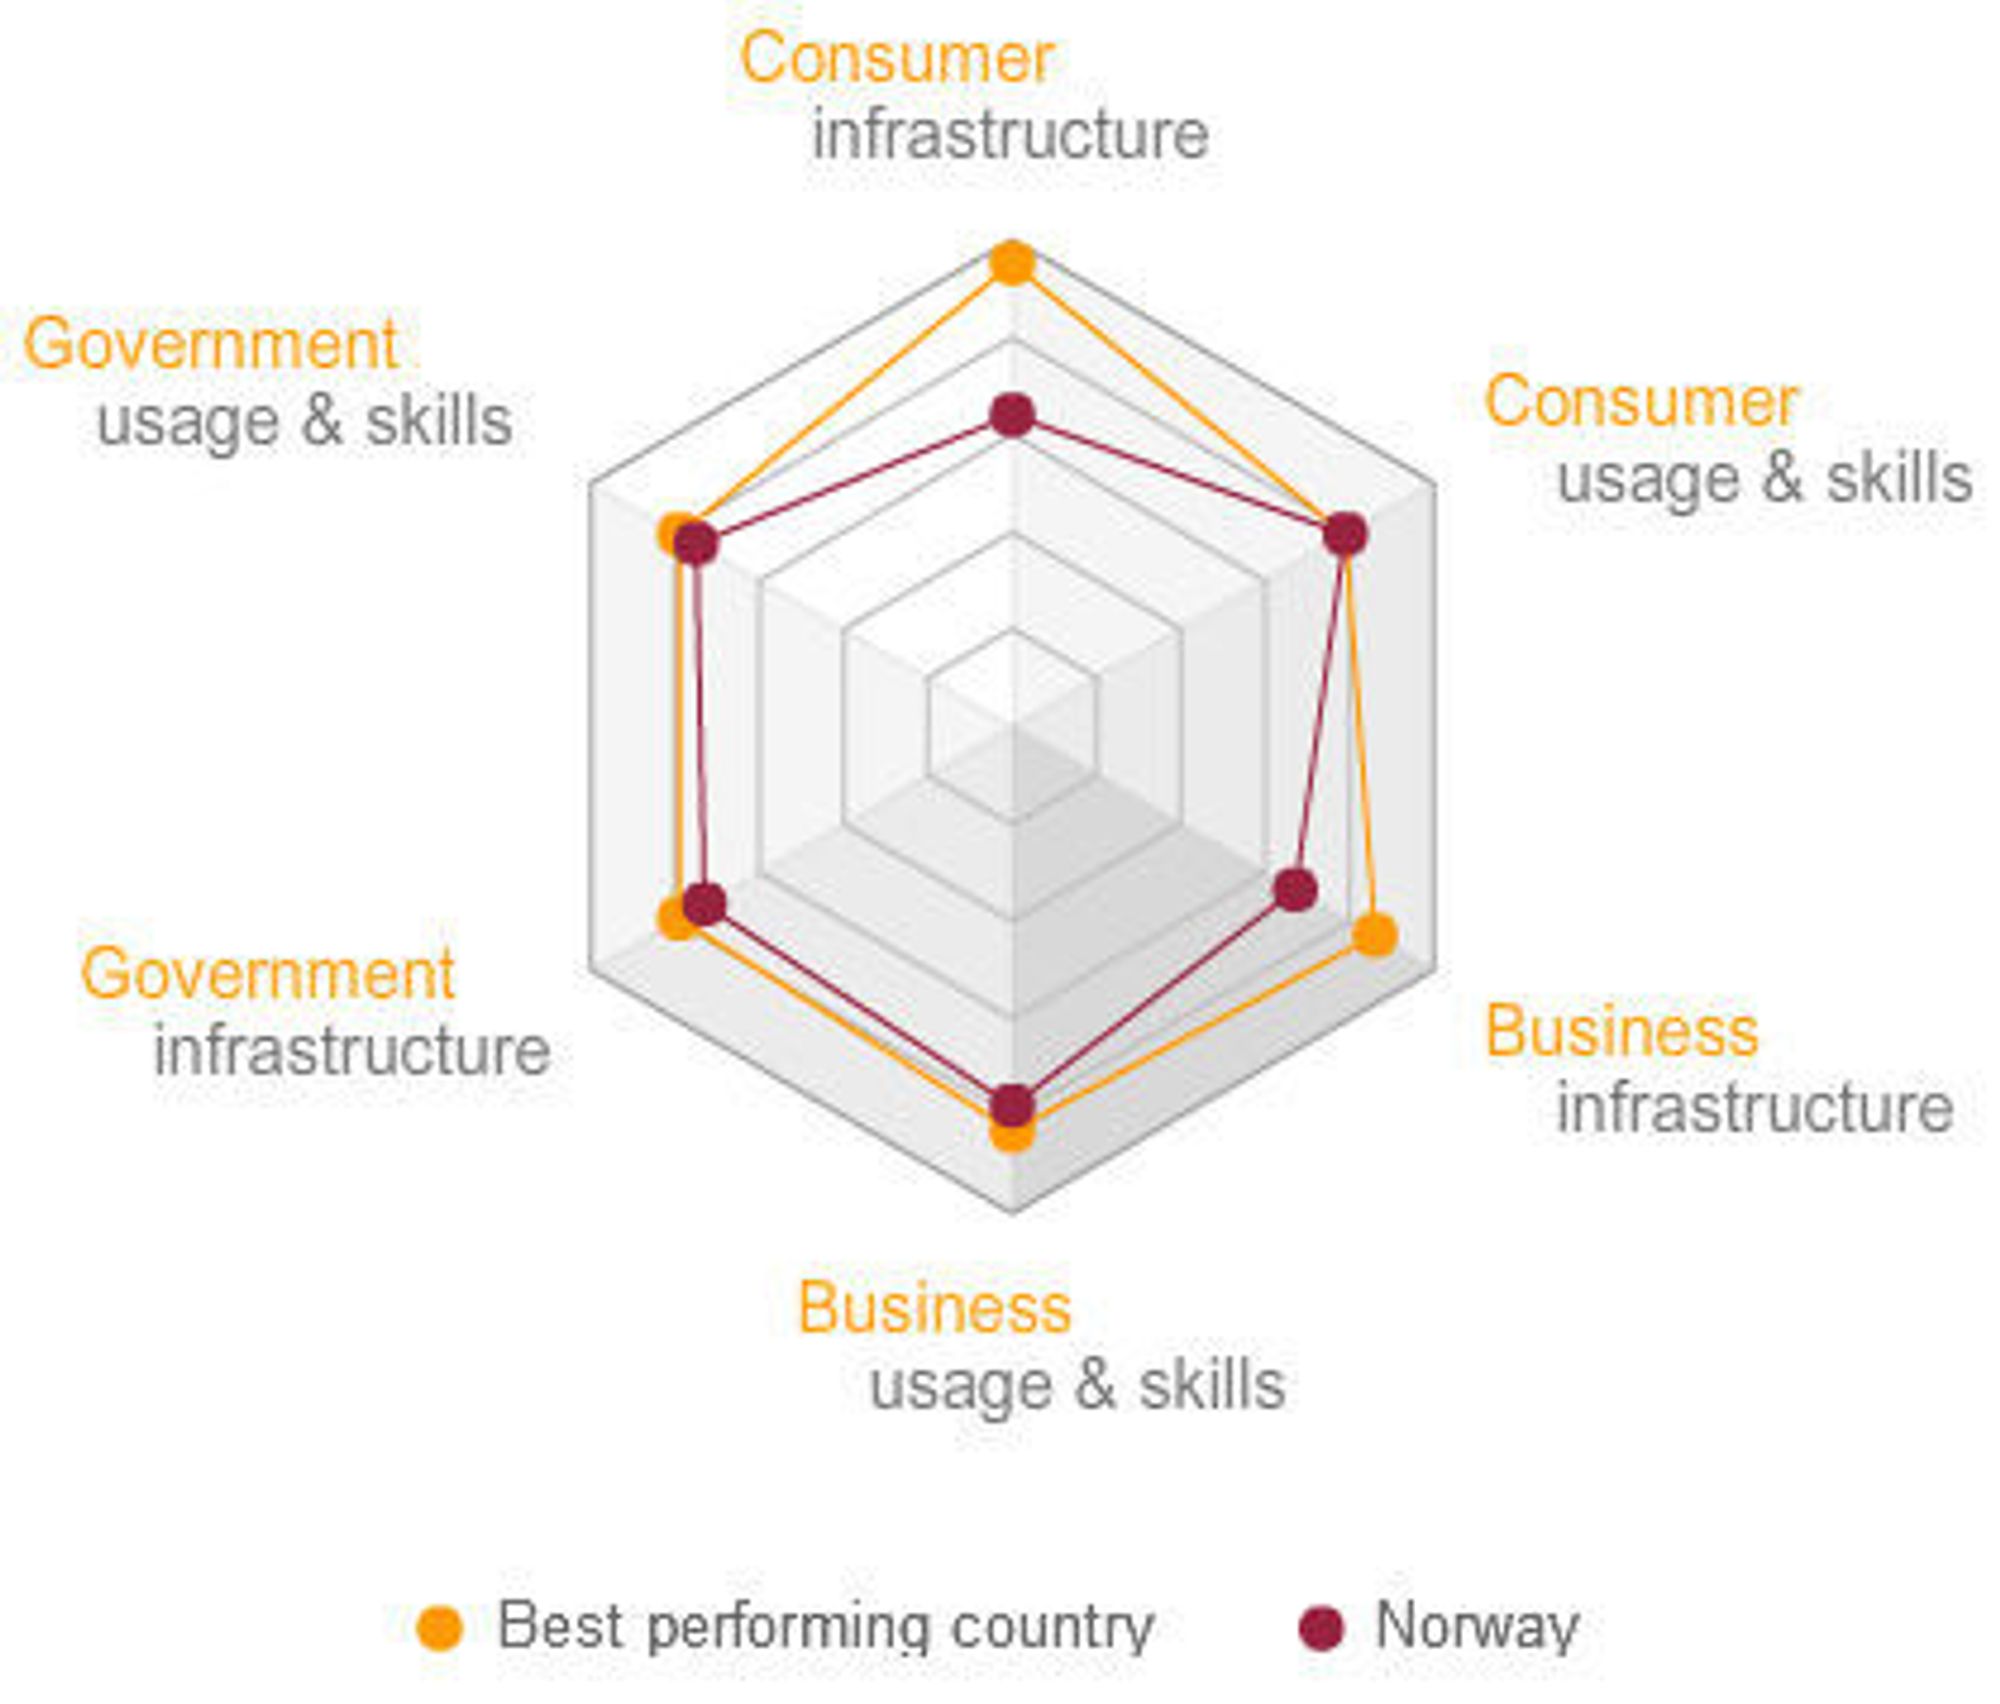 I forhold til det beste landet, Sverige, ligger Norge etter innen infrastruktur, for både bedrifter og forbrukere.